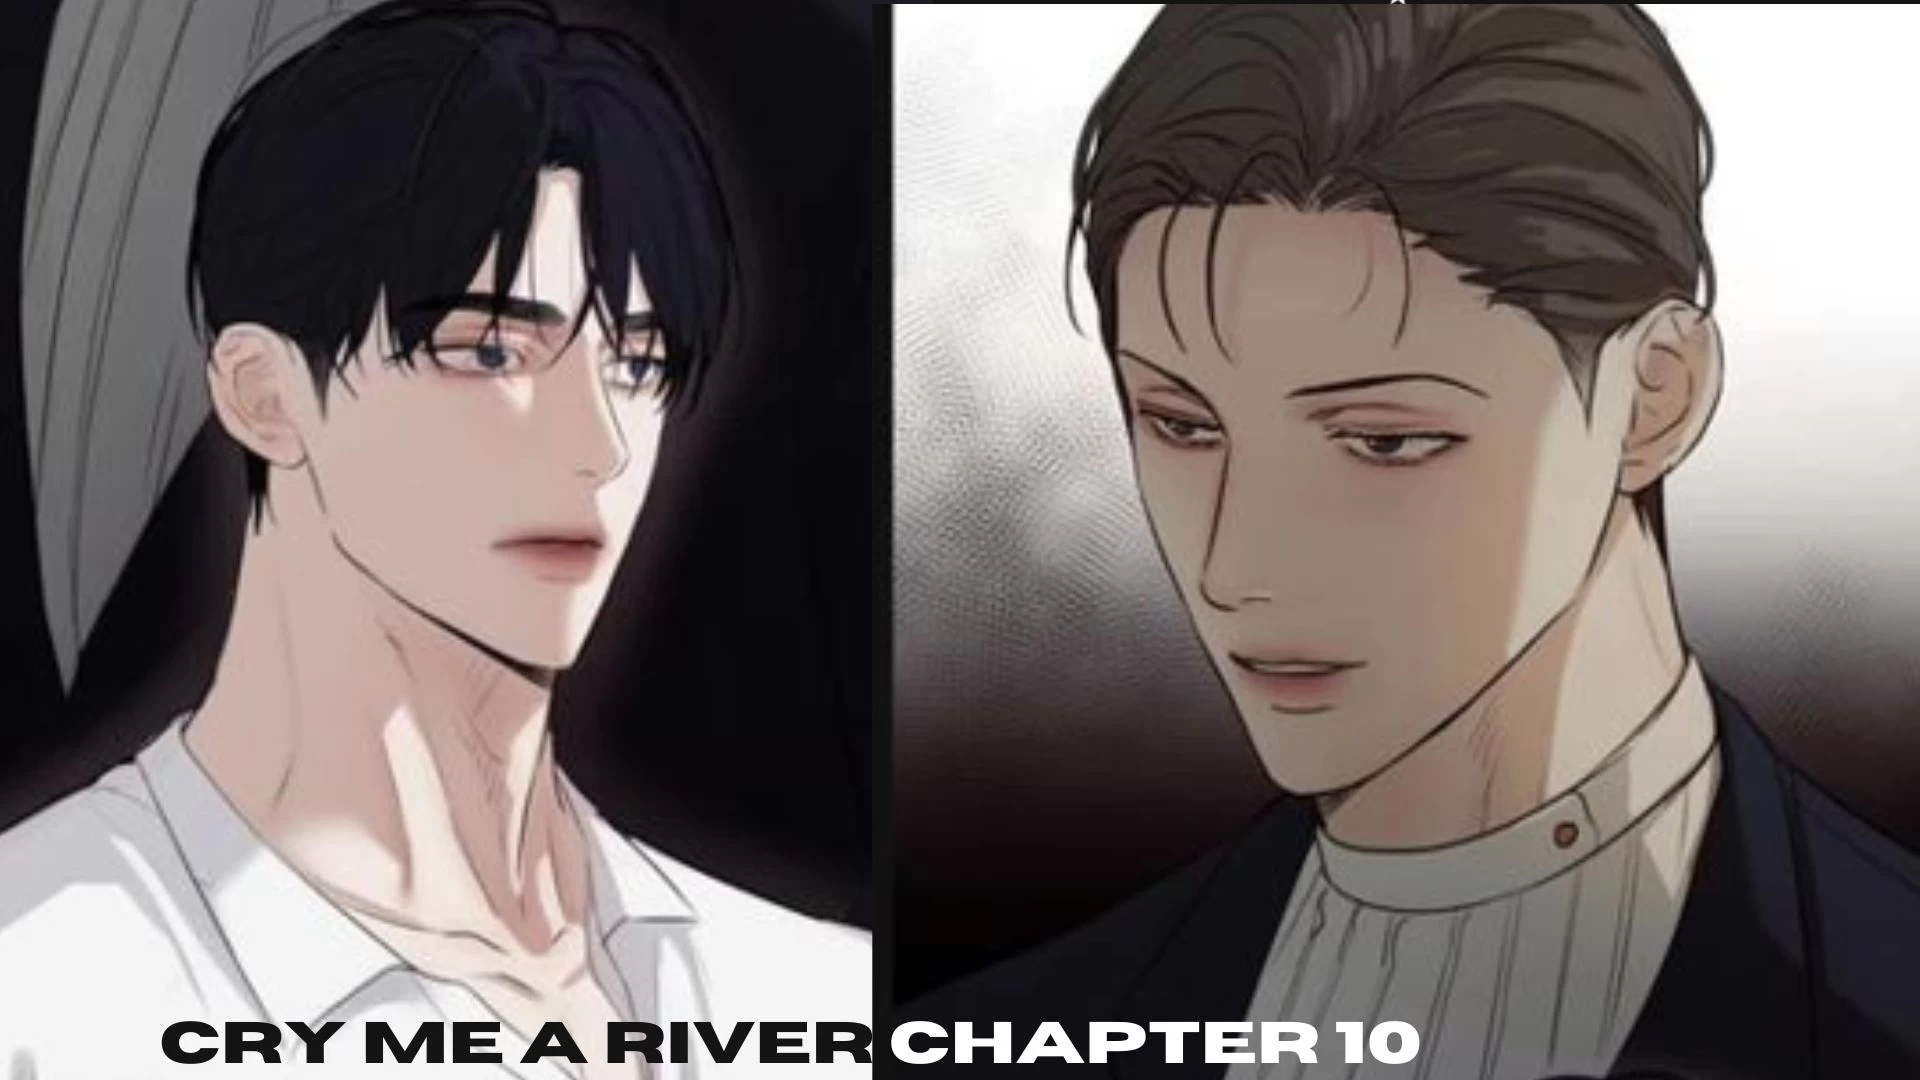 Cry Me a River Capítulo 10 Spoilers, fecha de lanzamiento, resumen, escaneo sin procesar, dónde leer y más